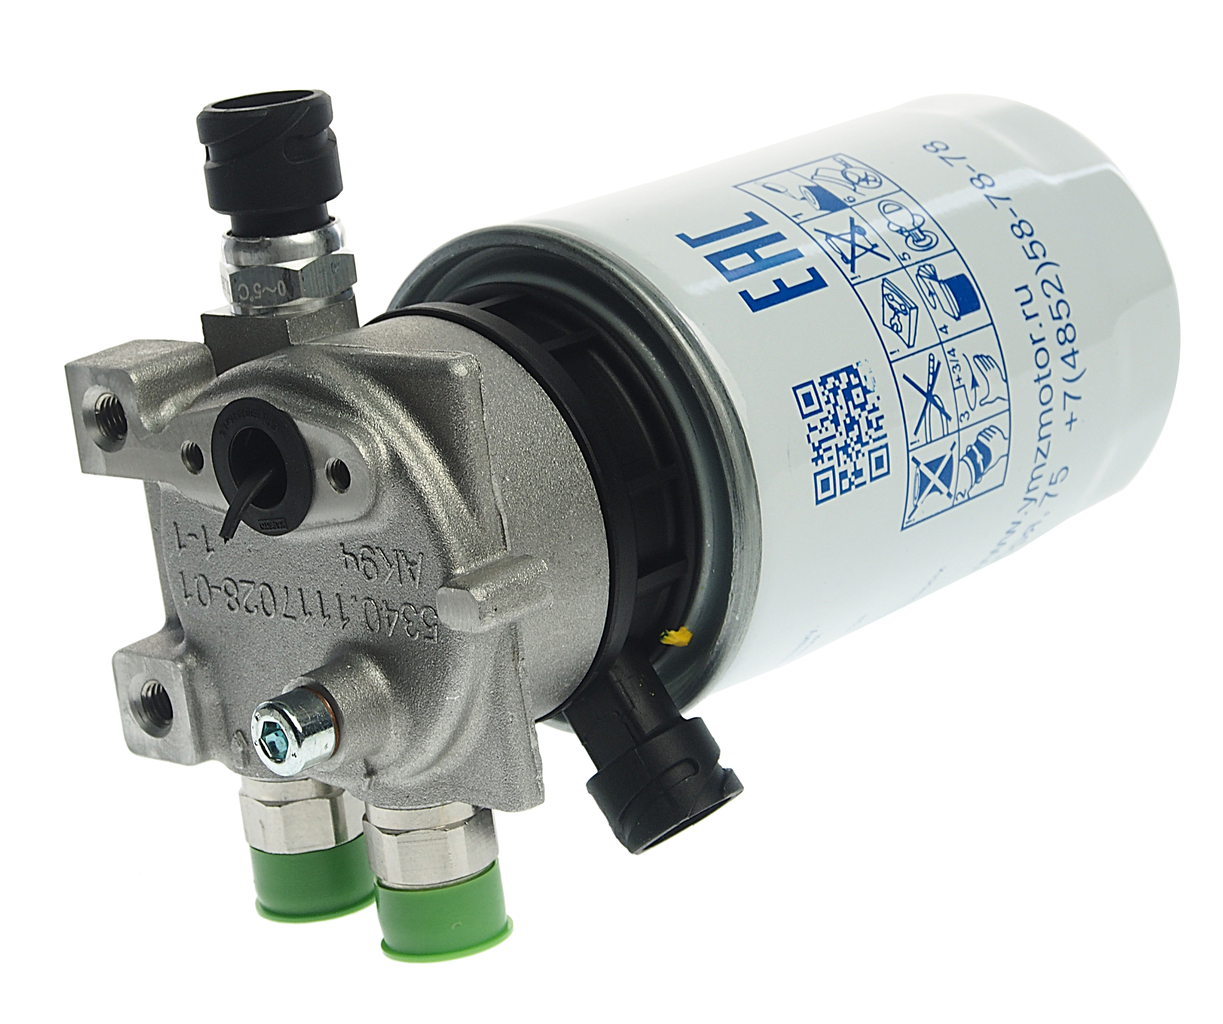 Фильтр топливный ЯМЗ-53443 тонкой очистки ЕВРО-5 с подогревателем в сборе, 53443.1117010-20, ЯМЗ